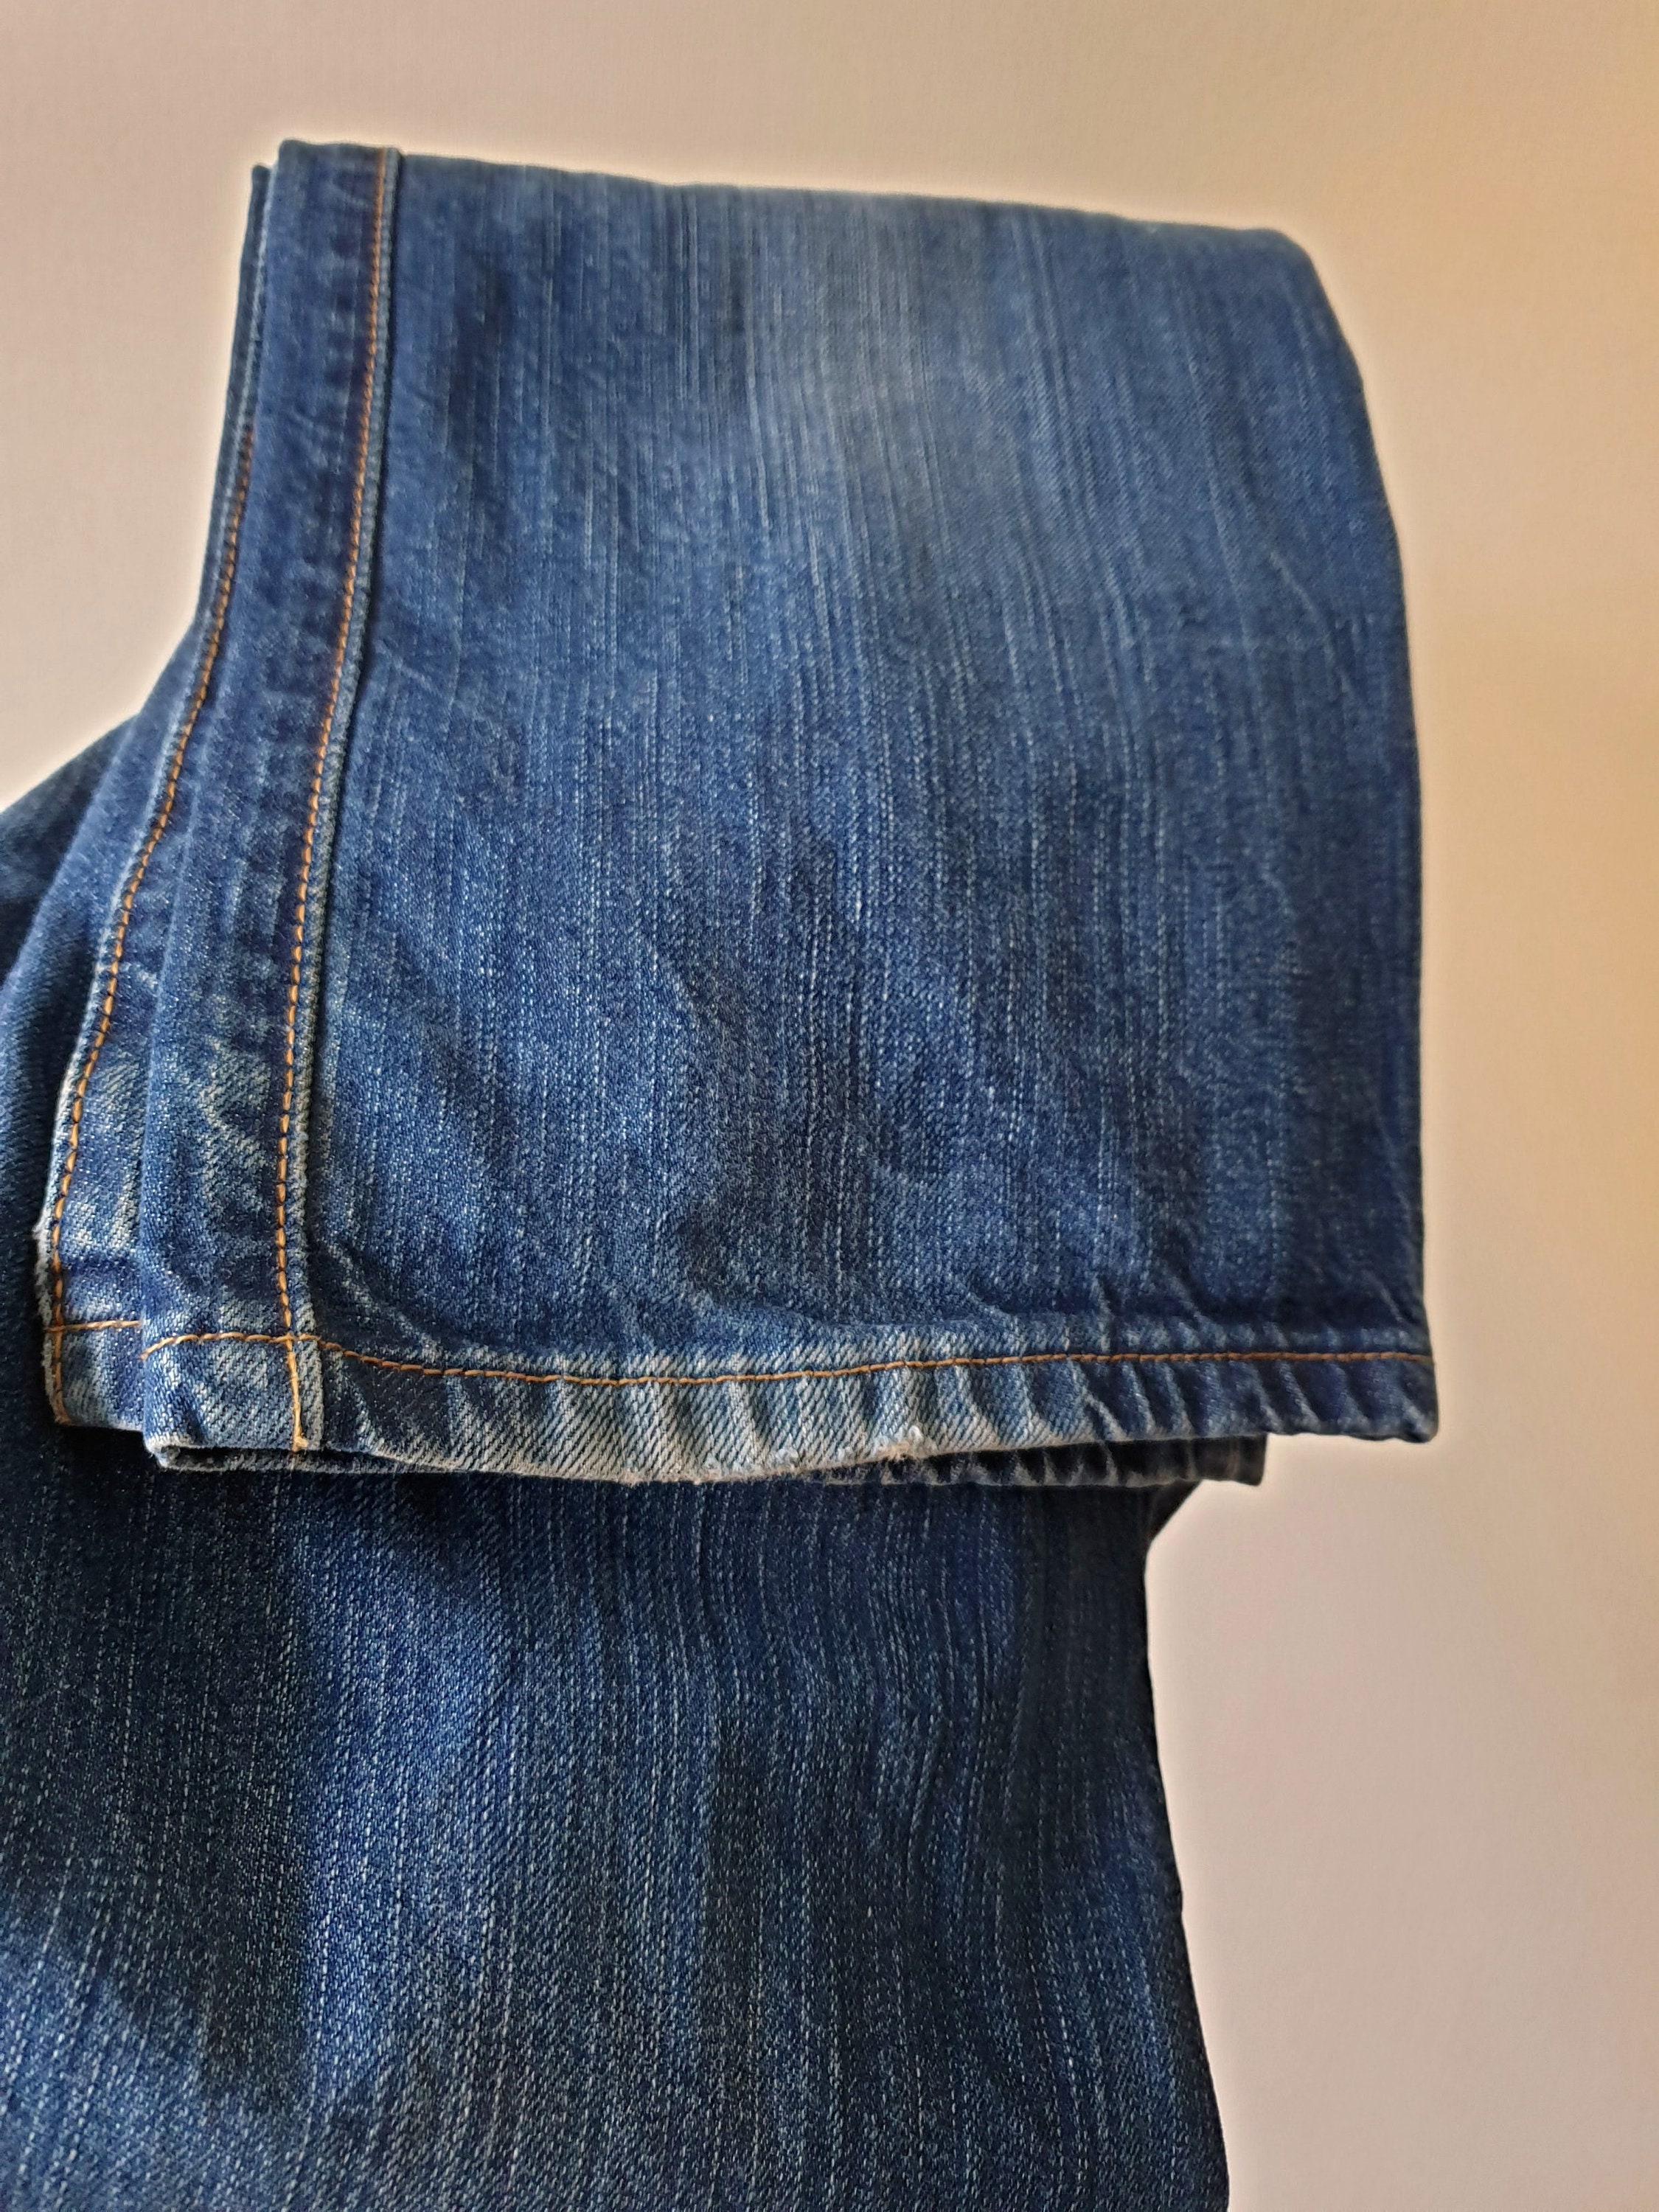 Vintage Man's Levis 501 Original Denim Blue Jeans - Etsy